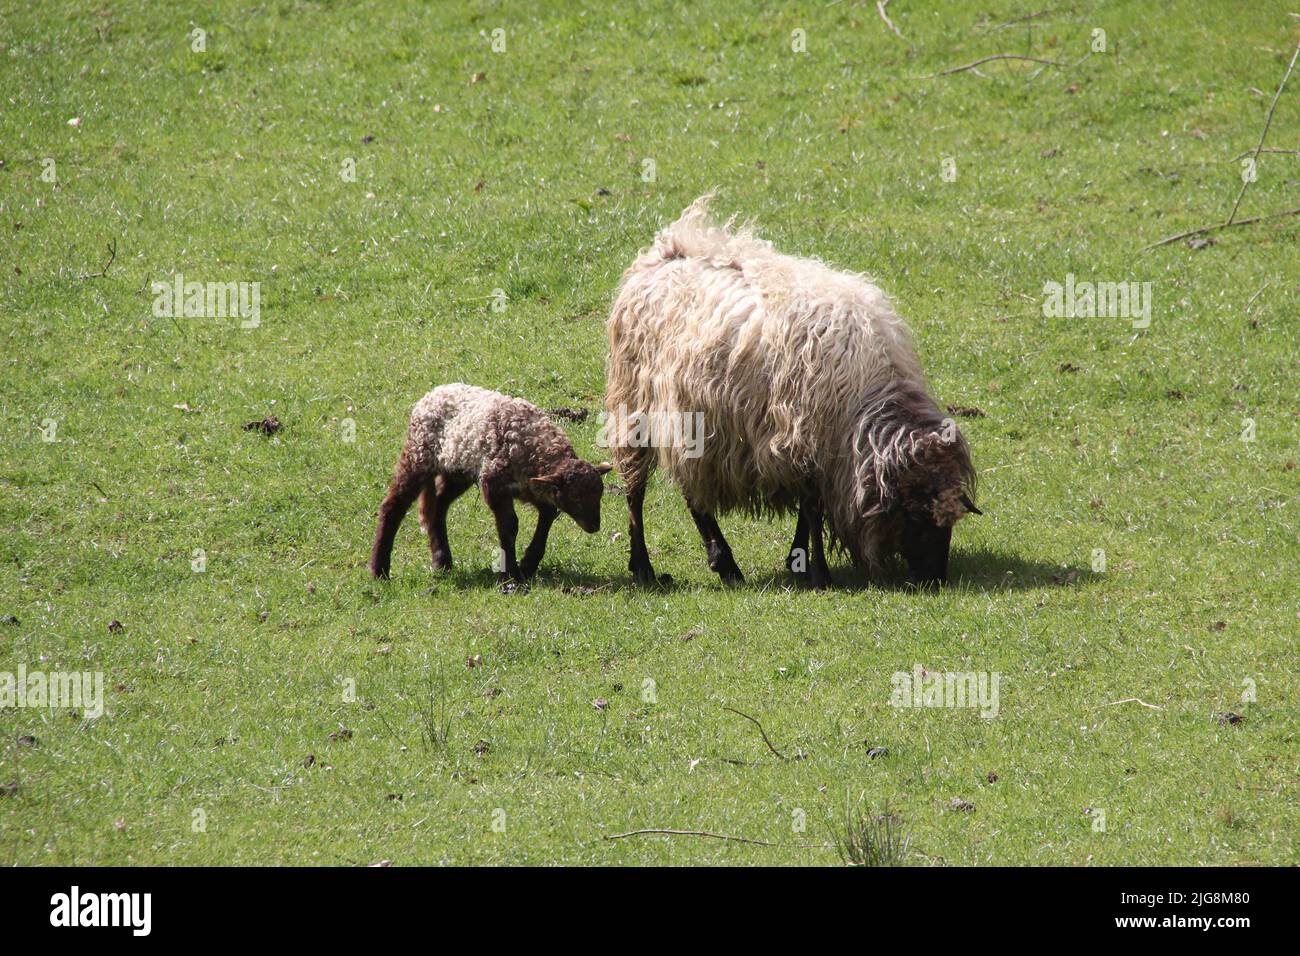 La vista de una oveja comiendo hierba con su cordero en el campo verde Foto de stock